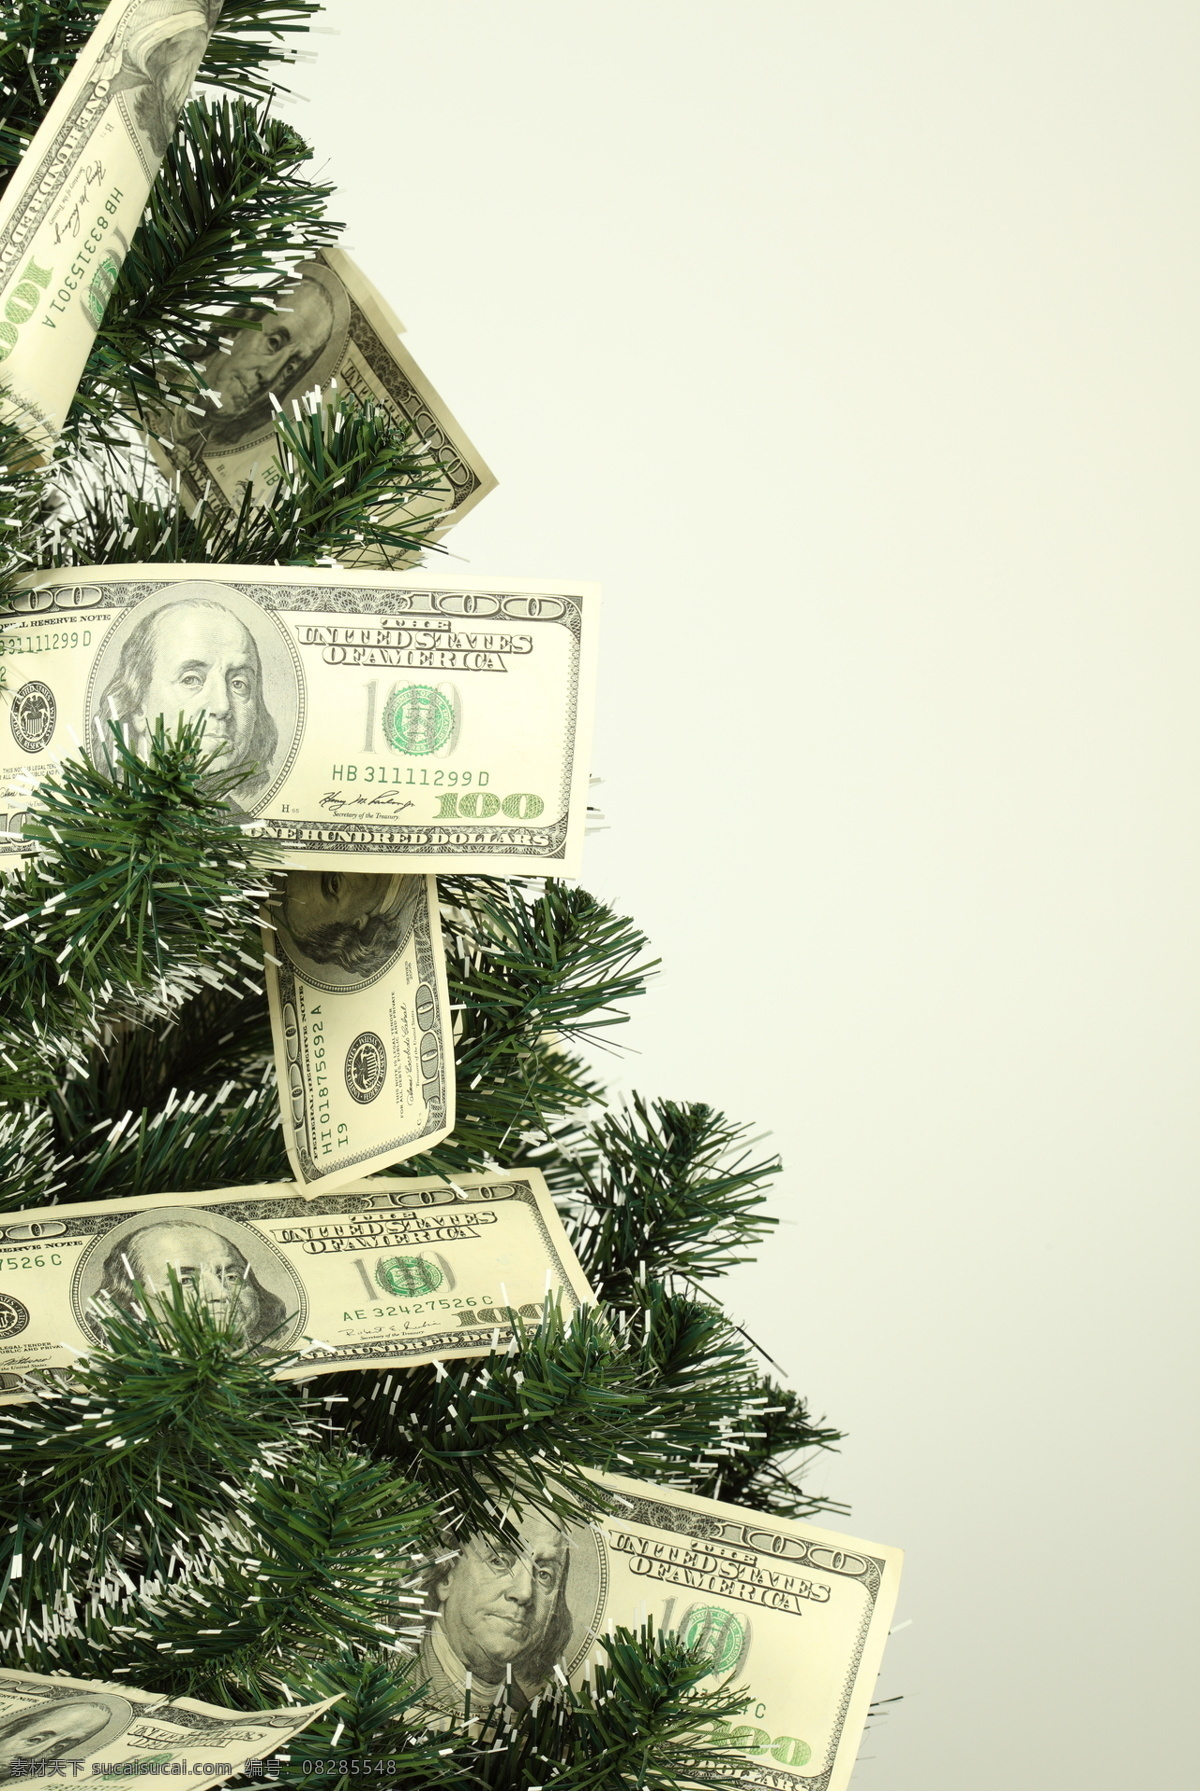 美元 圣诞树 美金 美钞 钞票 纸币 金钱 金融财经 金融货币 商务金融